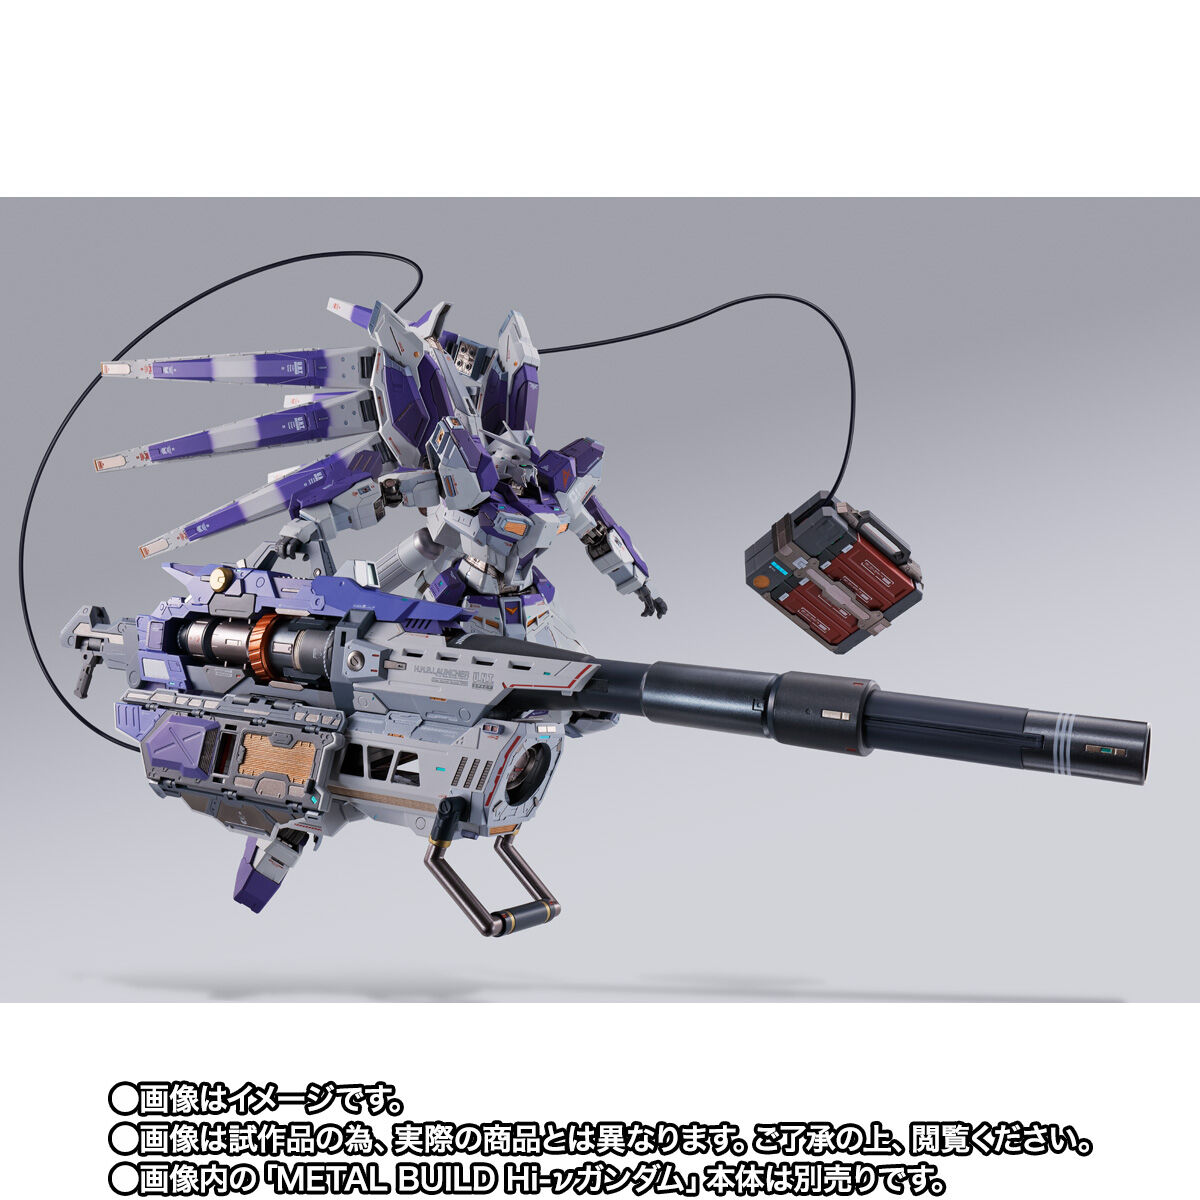 Metal Build Hyper Mega Bazooka Launcher Option Set for RX-93-ν2 Hi-ν Gundam